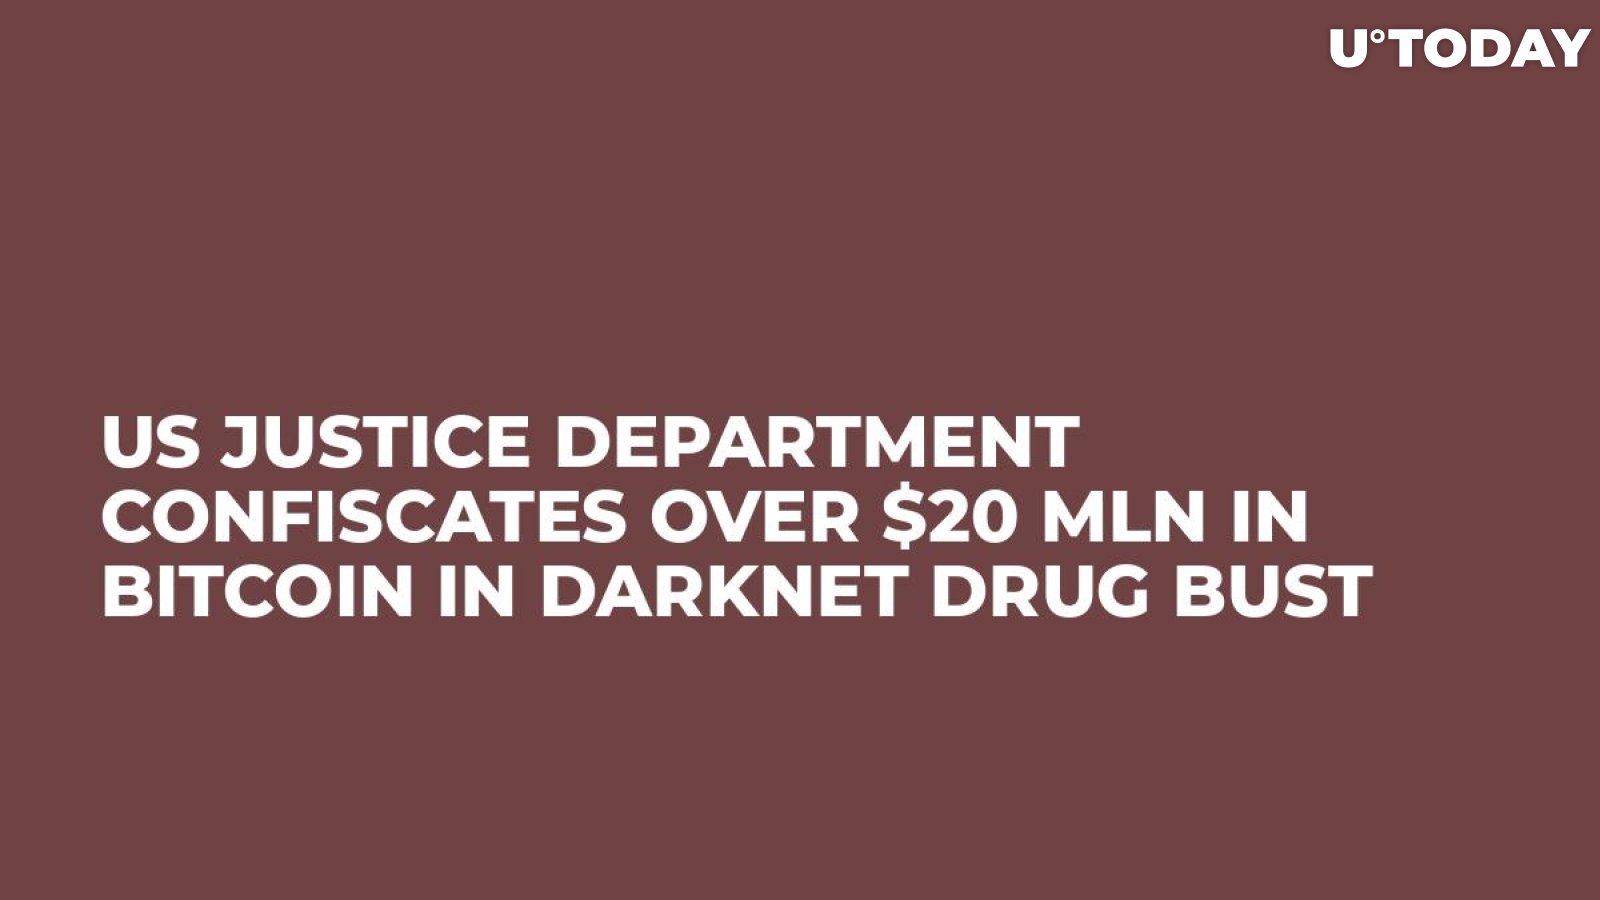 Darknet drug vendors